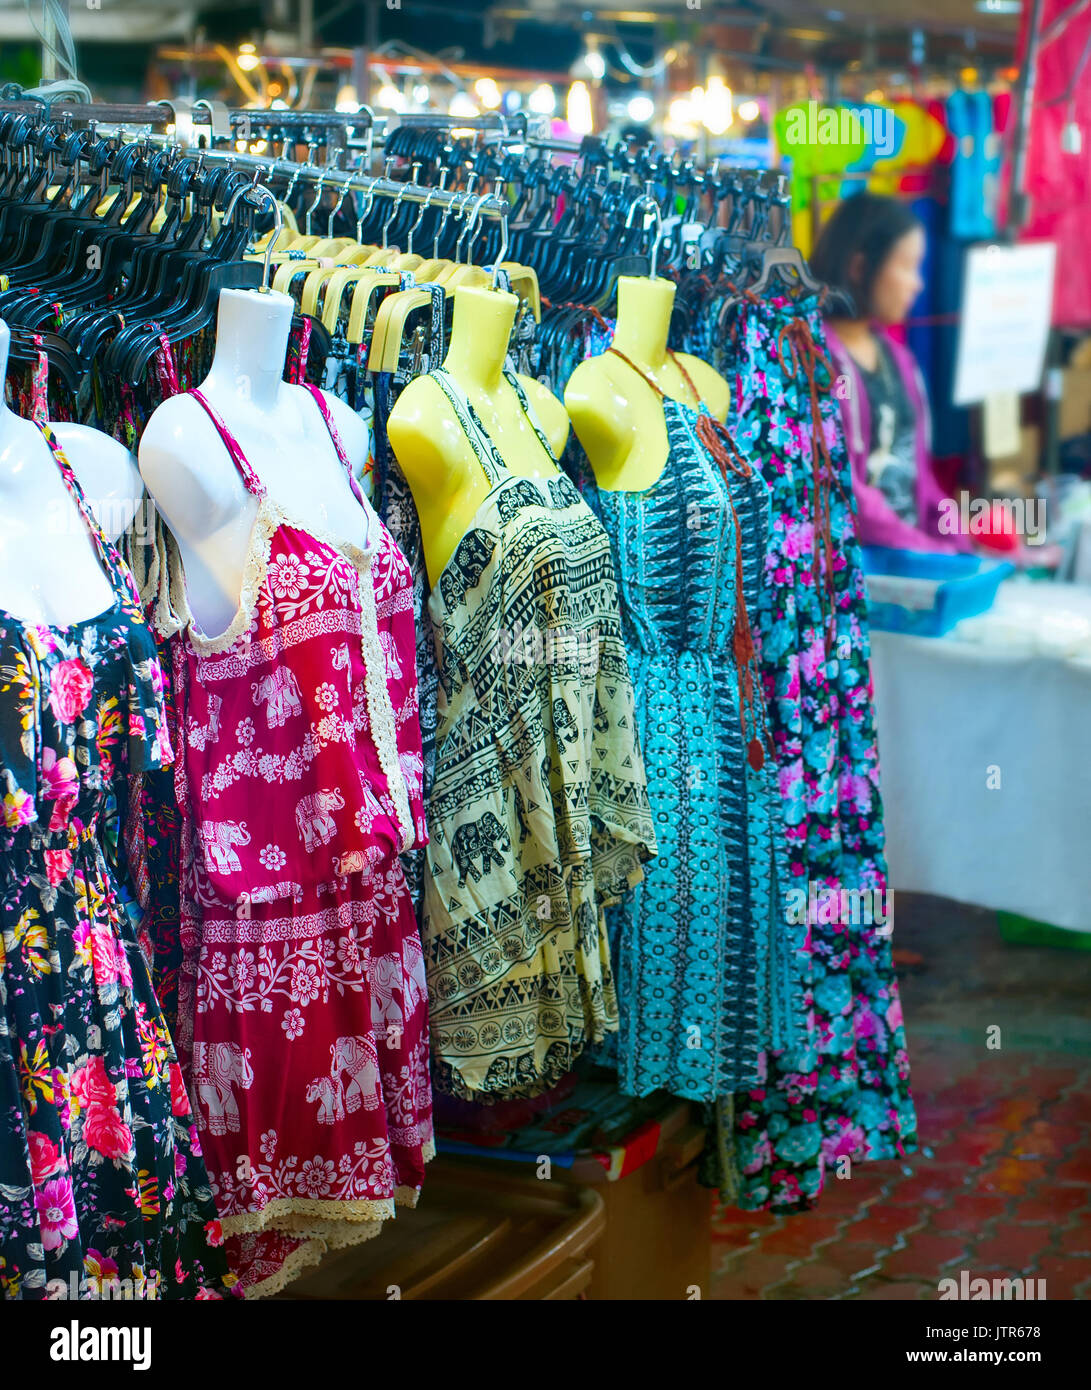 Frau Kleider für Verkaufen bei Nacht Markt. Chiang Mai, Thailand  Stockfotografie - Alamy